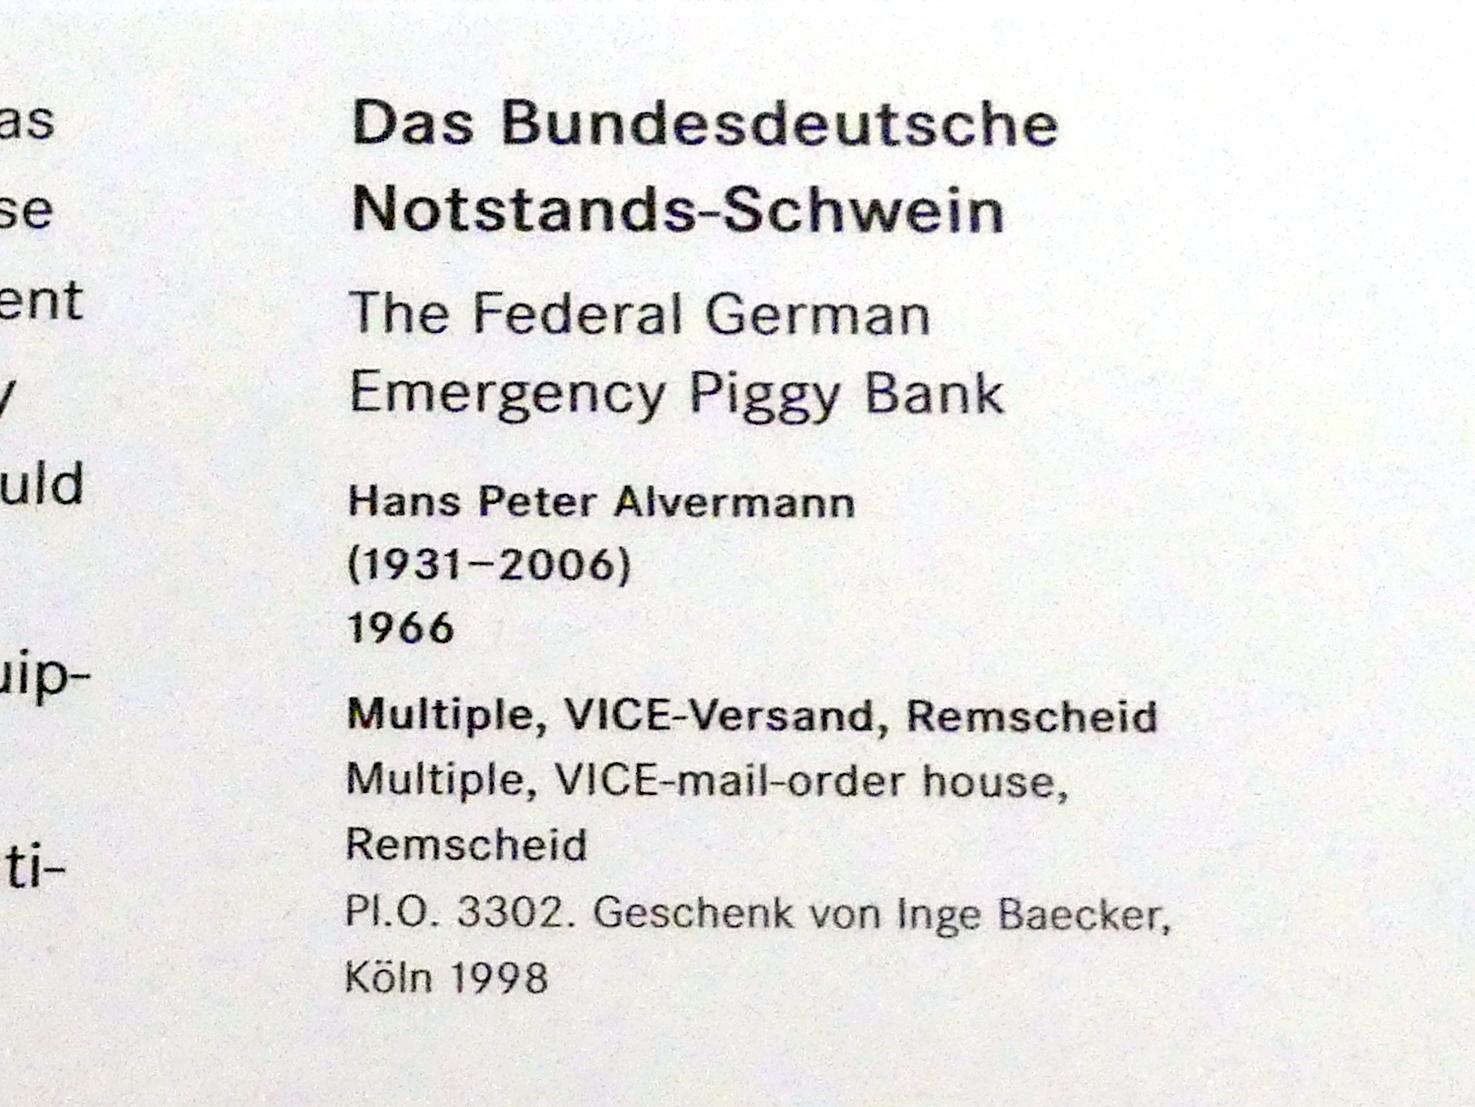 Hans Peter Alvermann (1965–1966), Das Bundesdeutsche Notstands-Schwein, Nürnberg, Germanisches Nationalmuseum, Saal 232, 1966, Bild 2/2